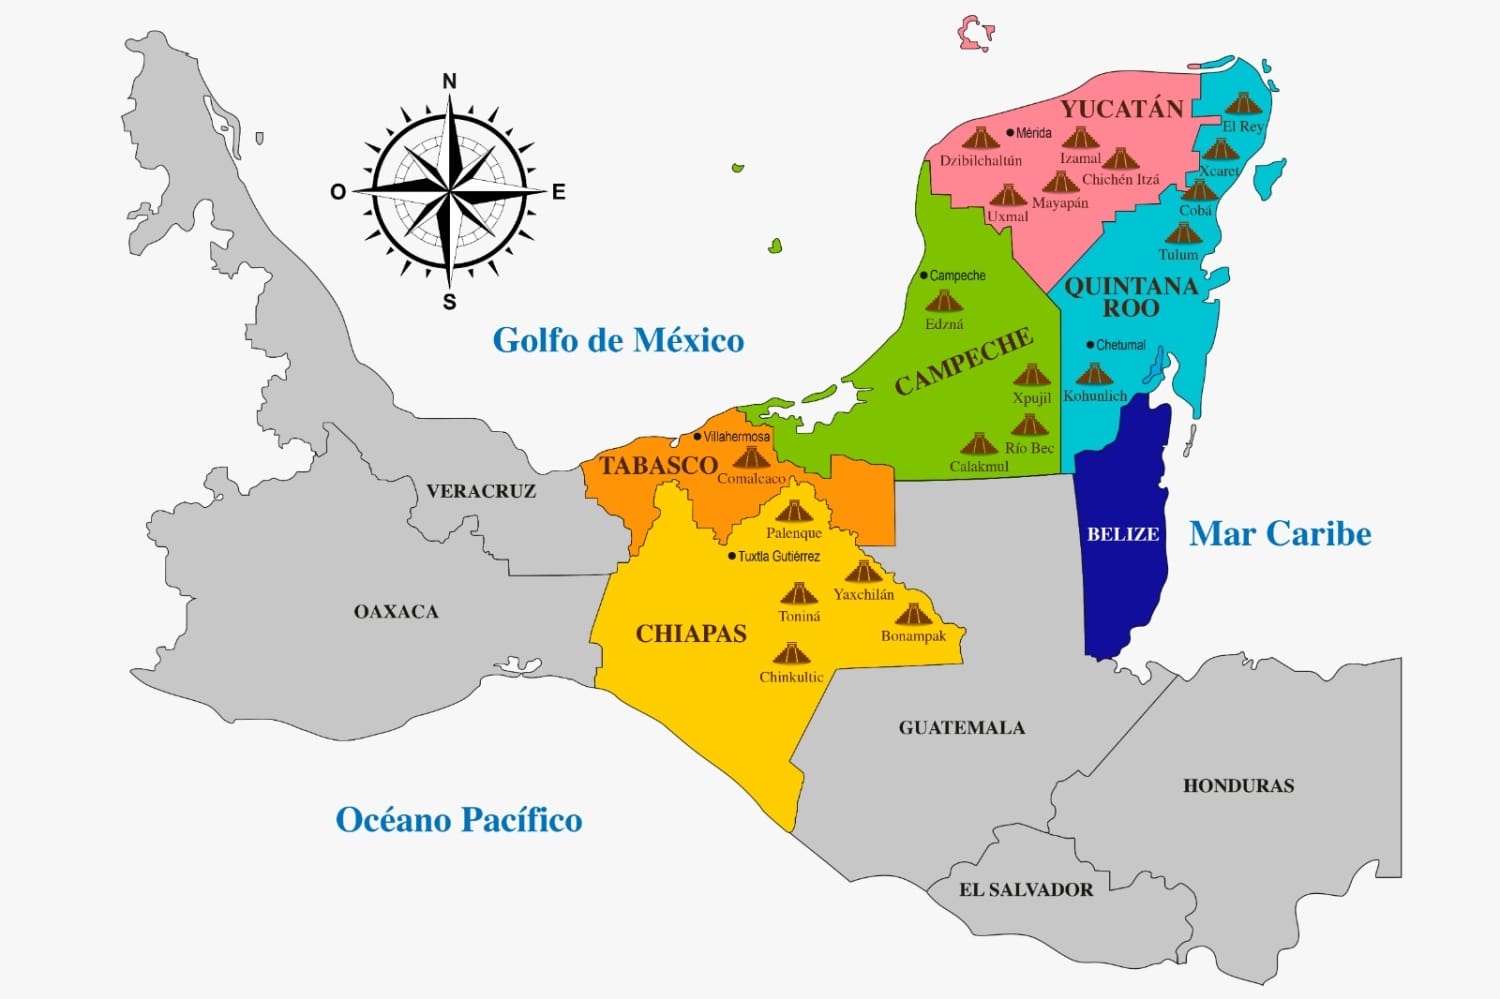 Mapa de por el Mundo Maya Yucatán, Quintana Roo, Campeche, Tabasco y Chiapas